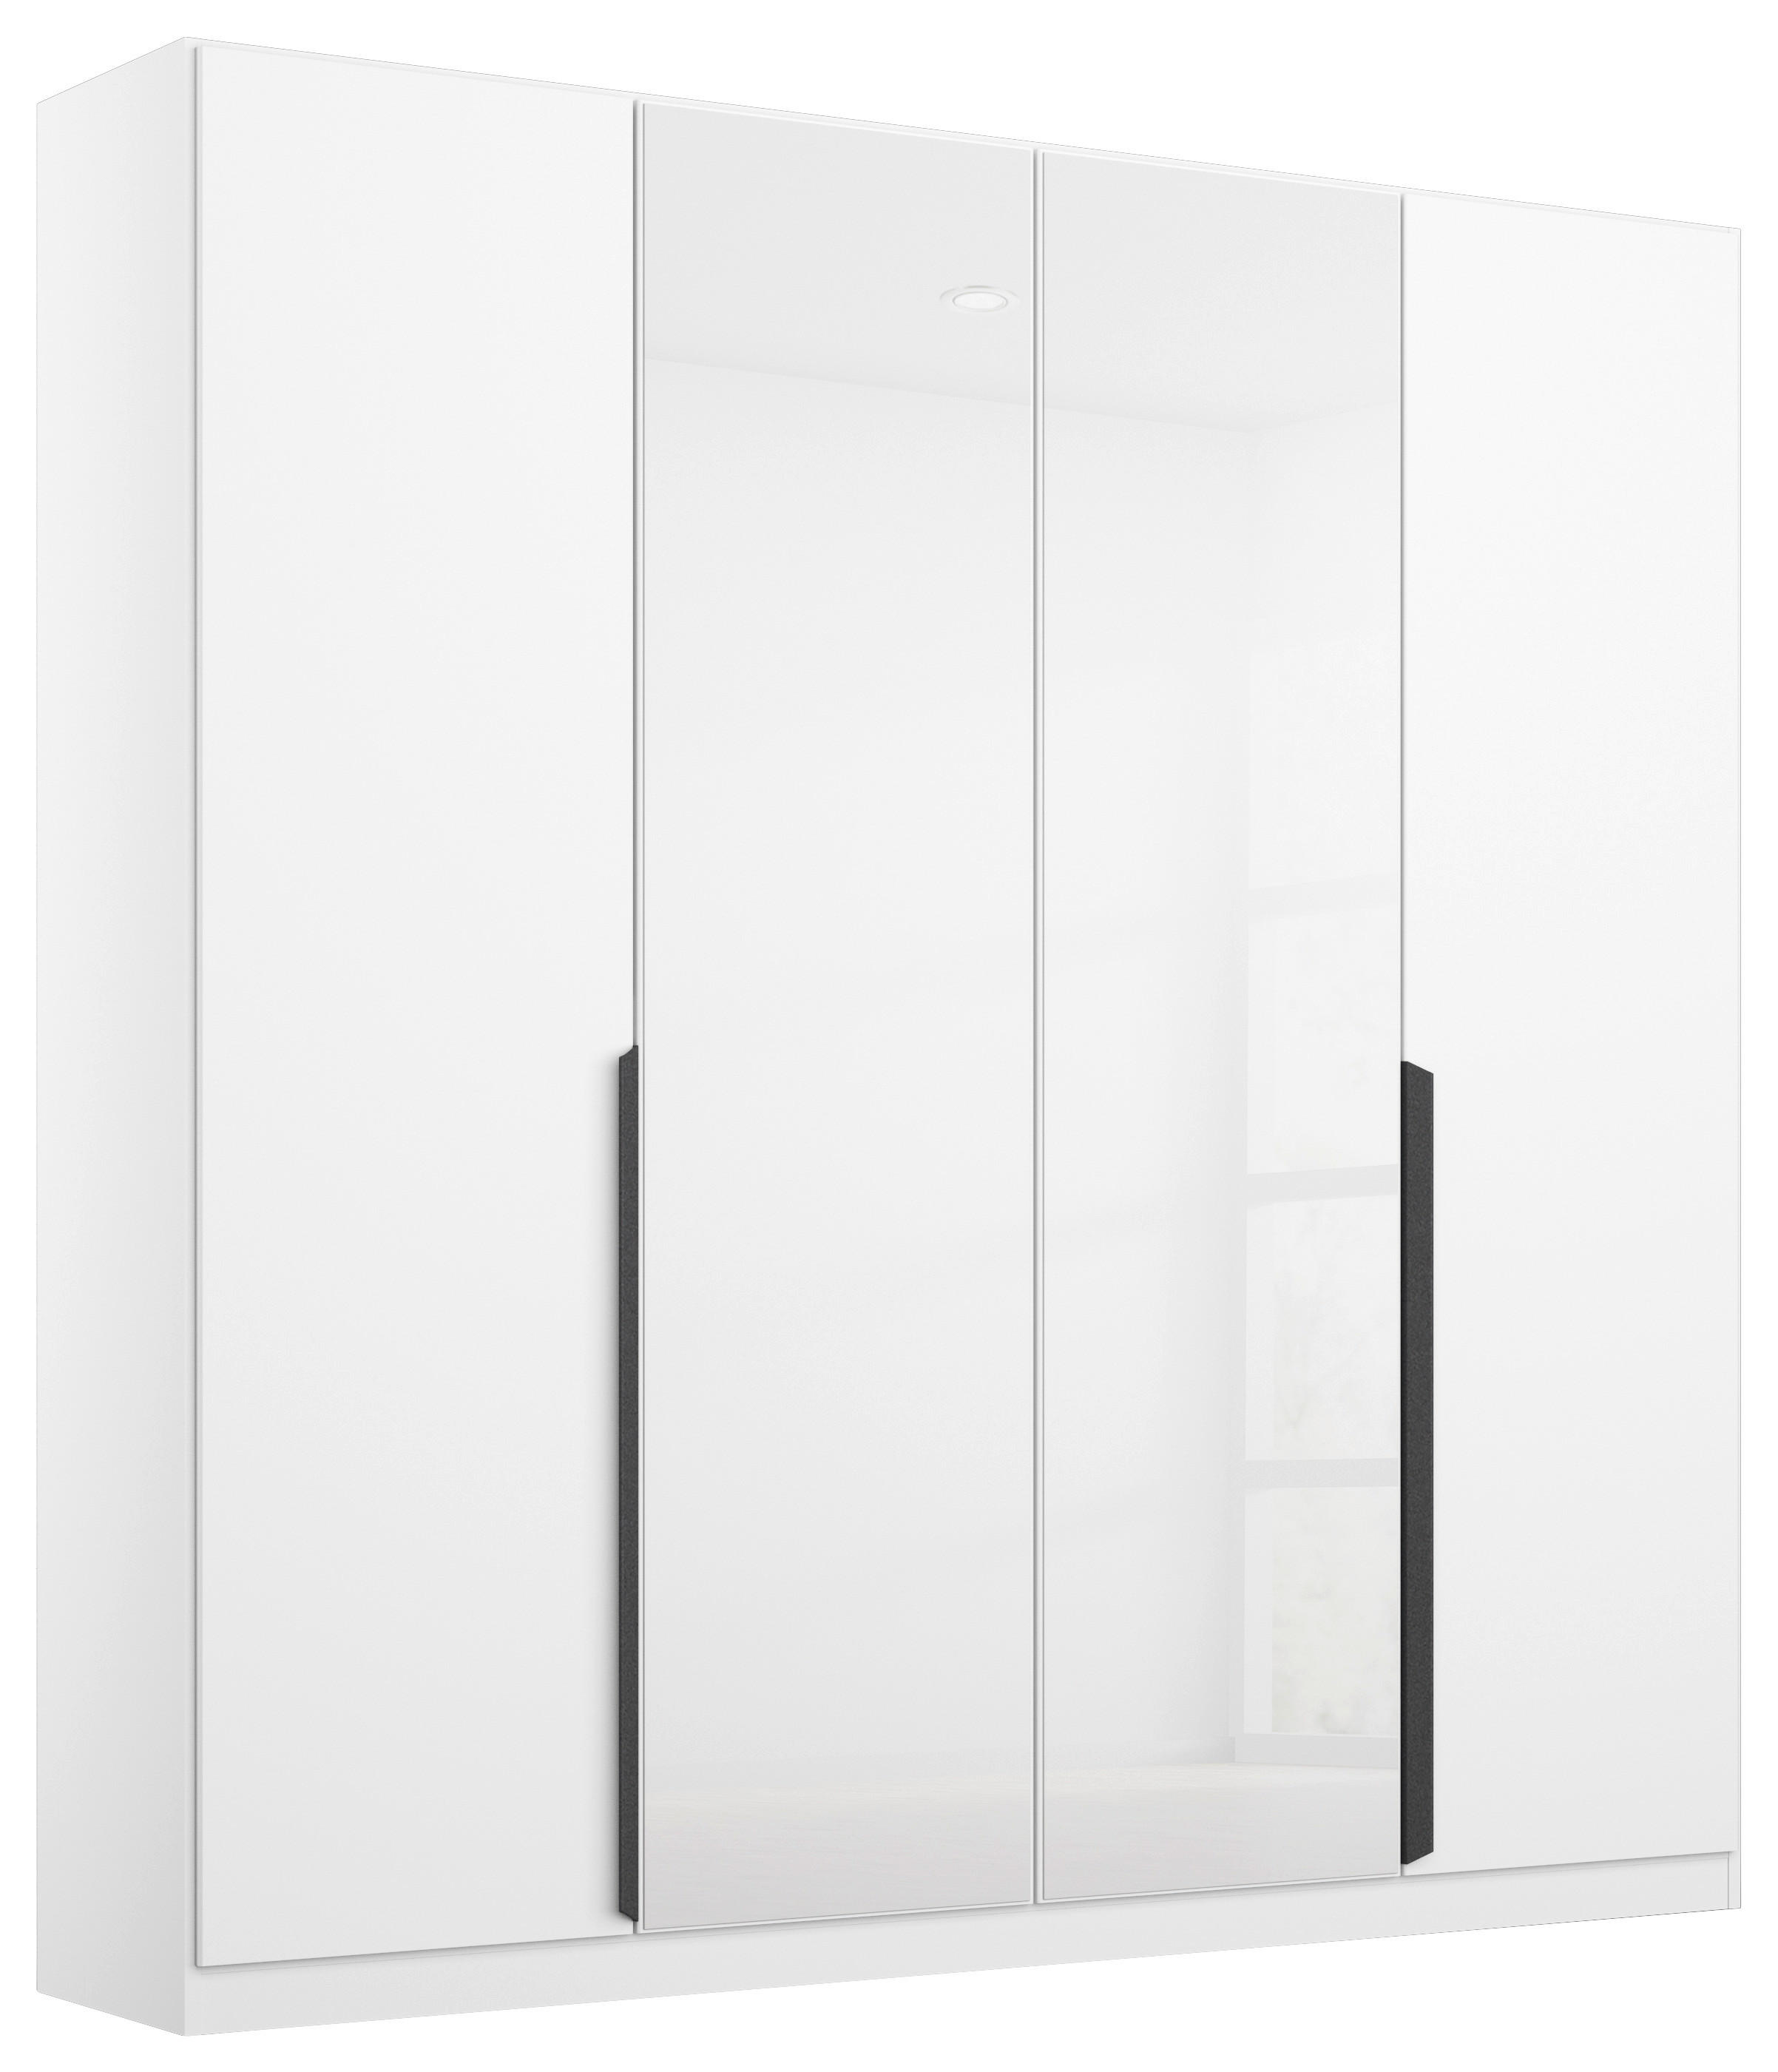 DREHTÜRENSCHRANK 181/210/54 cm 4-türig  - Weiß Hochglanz/Weiß, MODERN, Glas/Holzwerkstoff (181/210/54cm) - Rauch Möbel